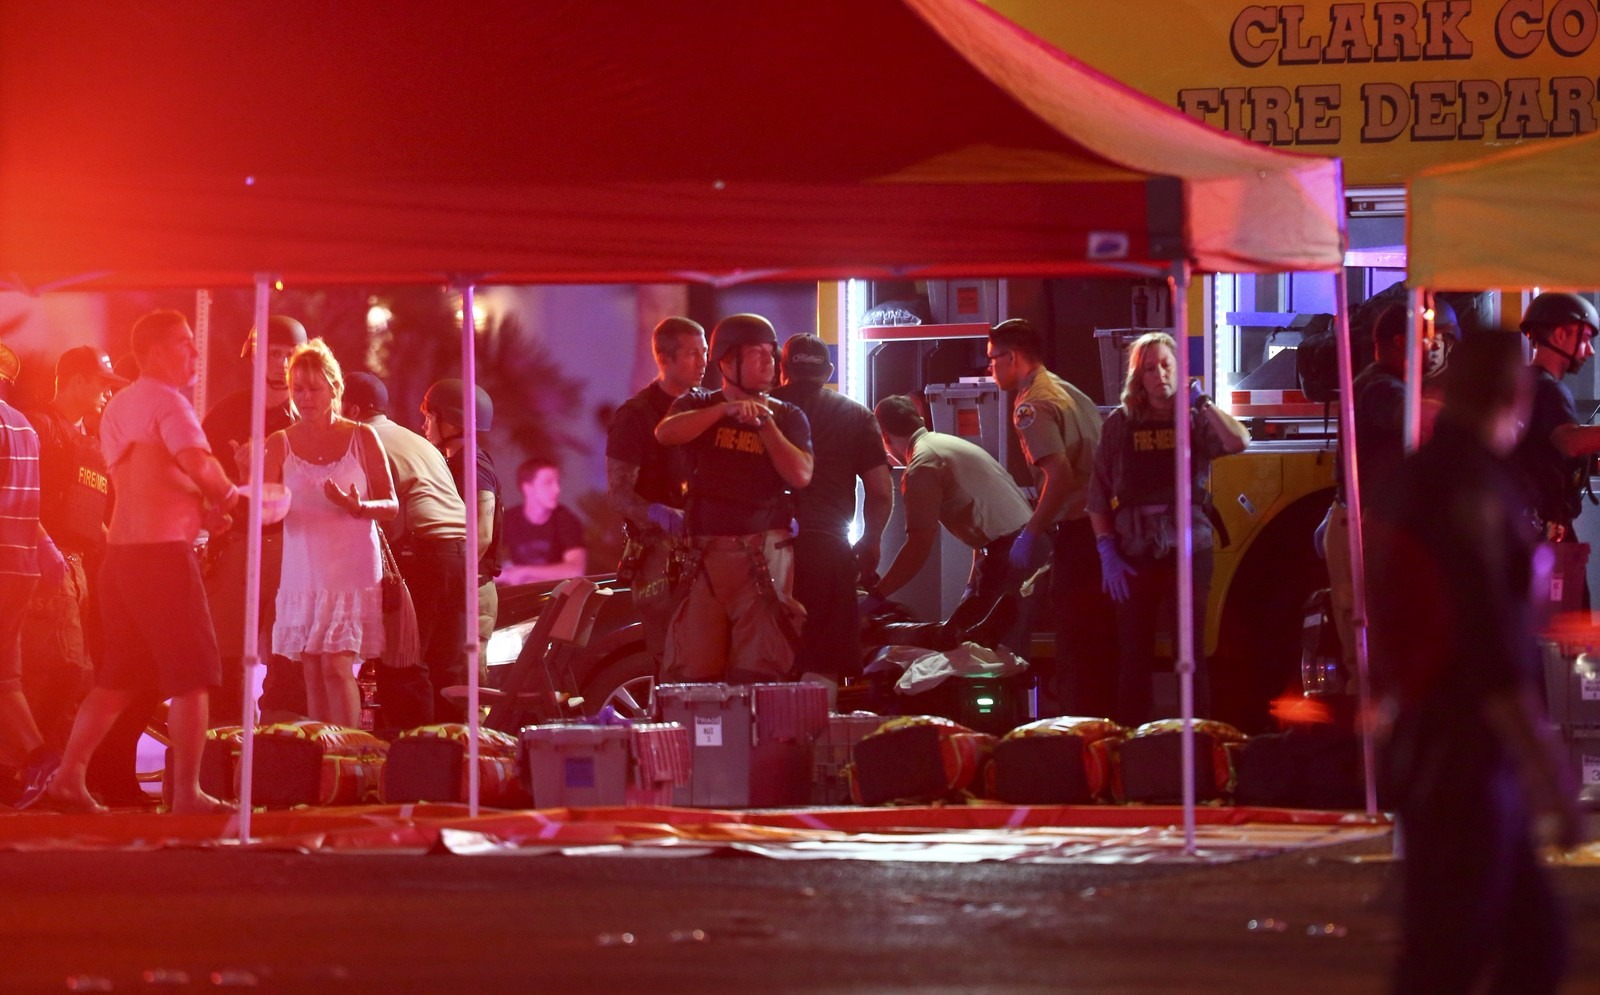 Equipes de salvamento trabalham para salvar vítimas no Hotel e cassino Mandalay Bay, em Las Vegas, EUA
Ethan Miller/Reuters